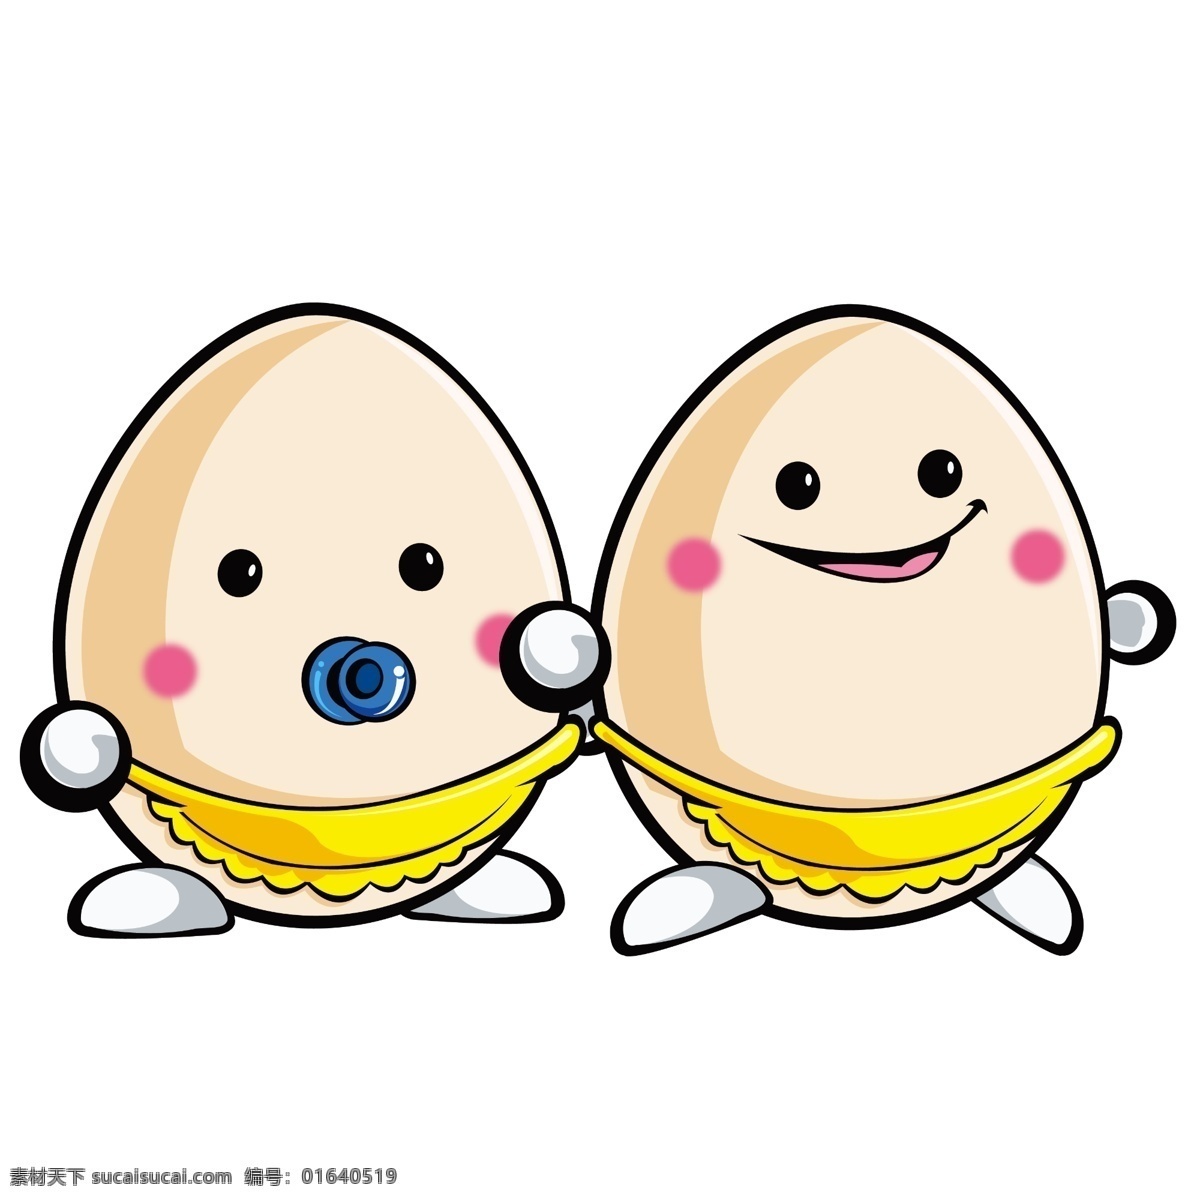 卡通鸡蛋 可爱鸡蛋 2个鸡蛋 动画 鸡蛋广告 卡通设计